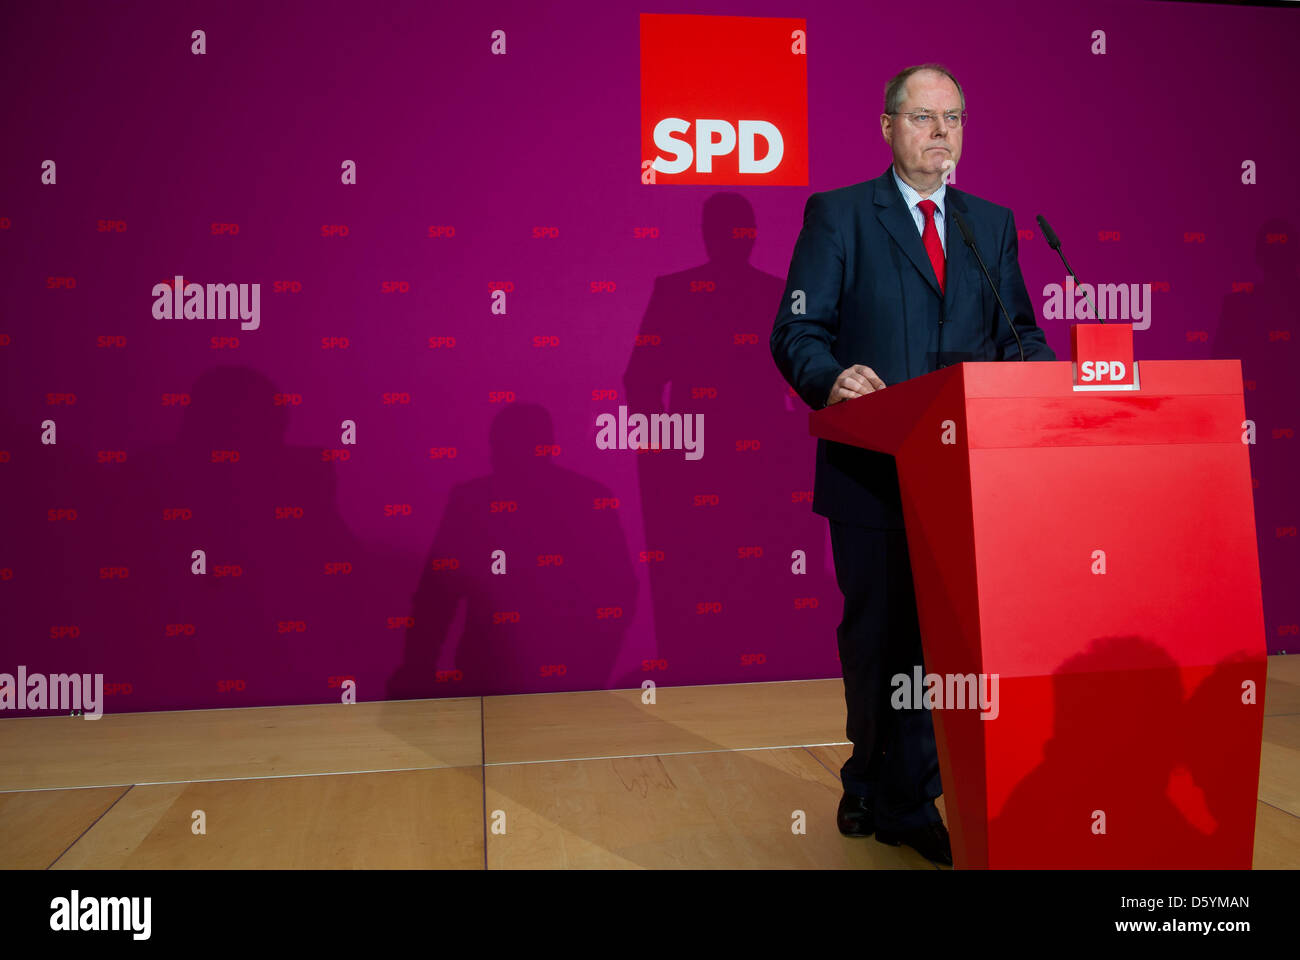 SPD cancelliere Steinbrueck candidato tiene una conferenza stampa su i suoi guadagni da interventi in pubblico a Berlino (Germania), 30 ottobre 2012. Report stato che Steinbrueck ha guadagnato 1,25 milioni di euro sul lato tra il 2009 e il 2010. Foto: TIM BRAKEMEIER Foto Stock